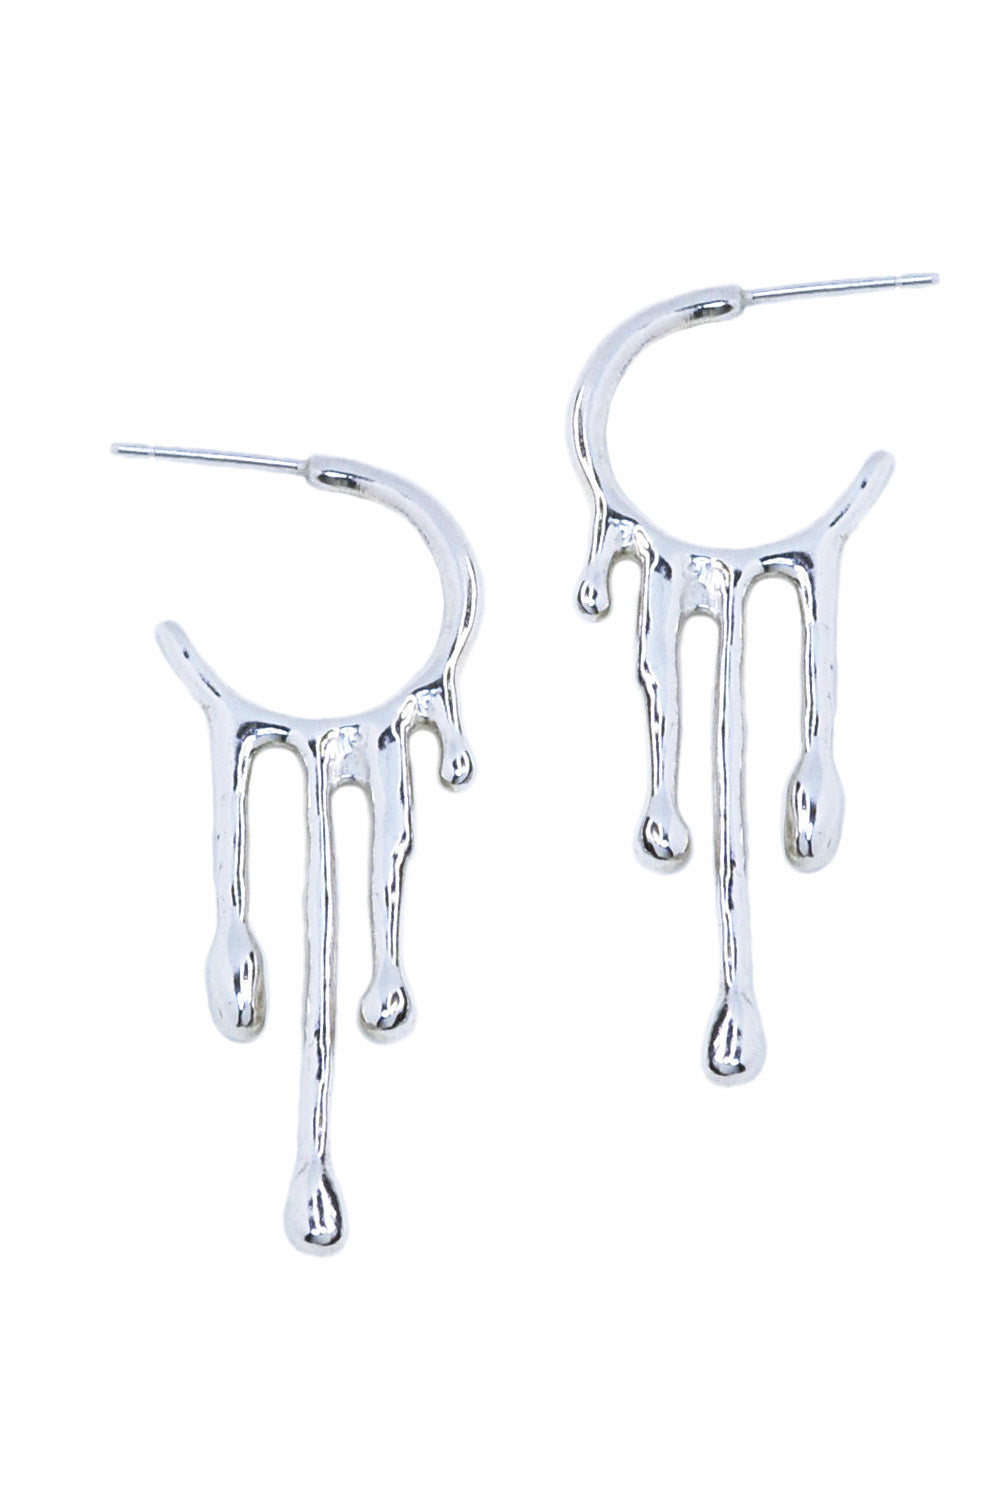 Rain silver earrings by Annika Burman